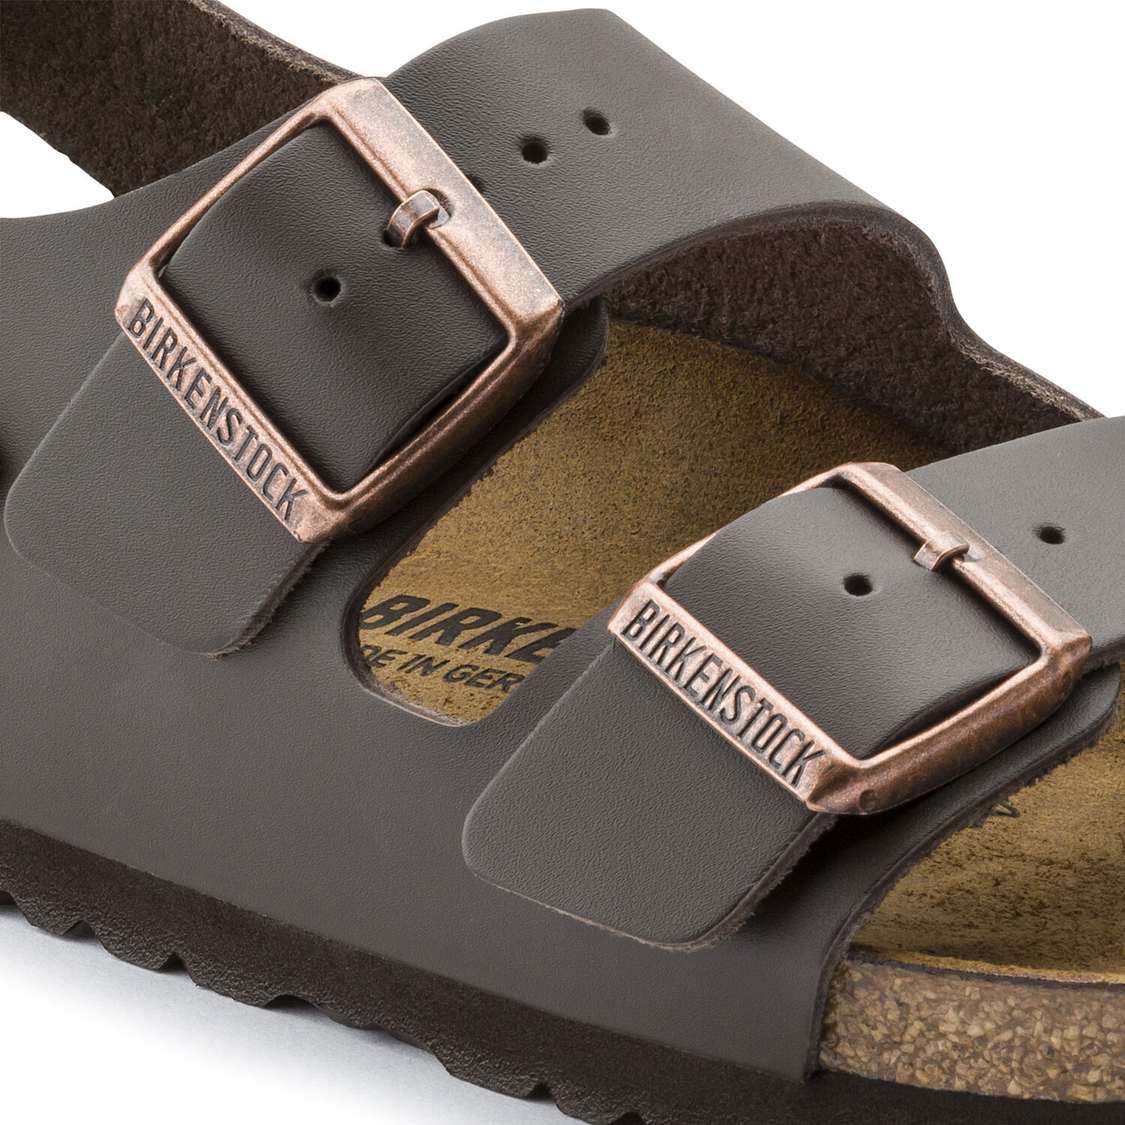 Birkenstock Milano Leather Multi Strap Sandals Dark Brown | GQv4NnC8CIv